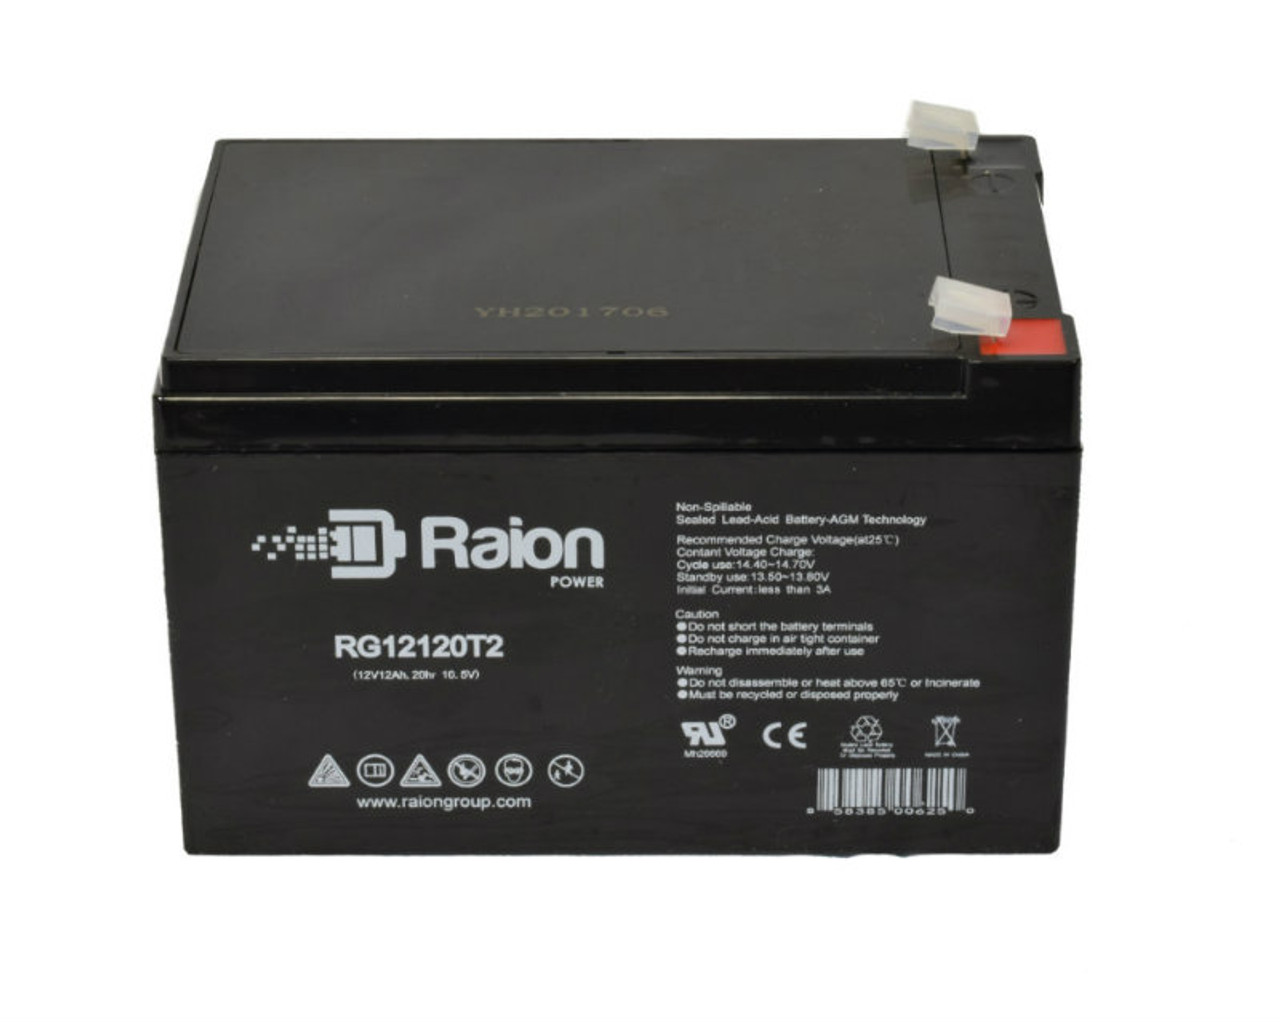 Raion Power RG12120T2 SLA Battery for GIO Swift Moped